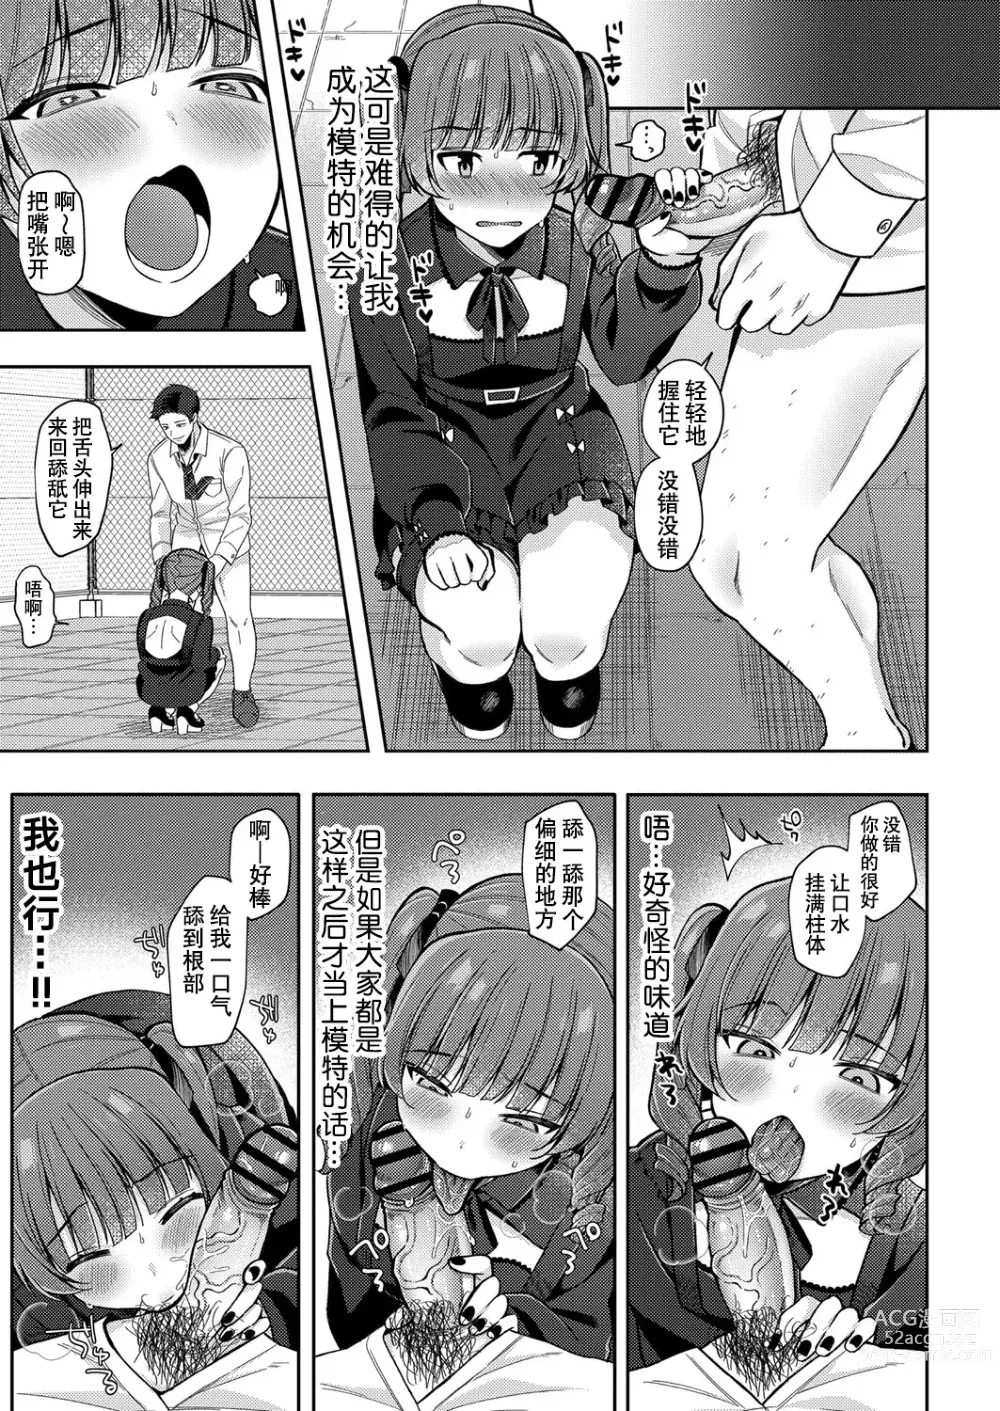 Page 15 of manga Yumemiru Masegaki ~Hatsudori Debut~